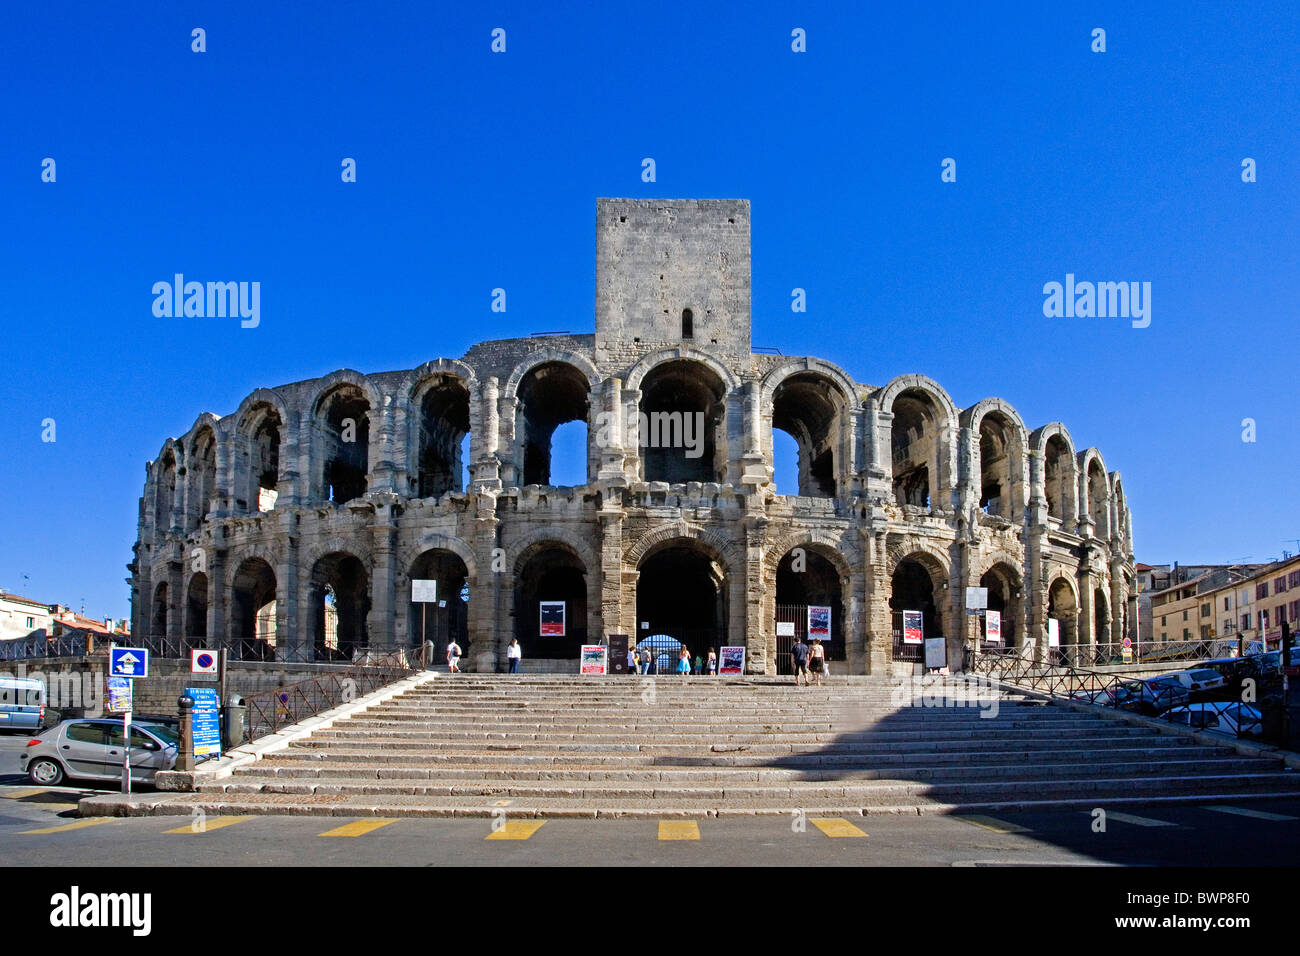 Frankreich Europa Arles Provence Region Stadt Stadt römischen Amphitheater Juli 2007 Europa Arena Welt UNESCO Welterbe Stockfoto